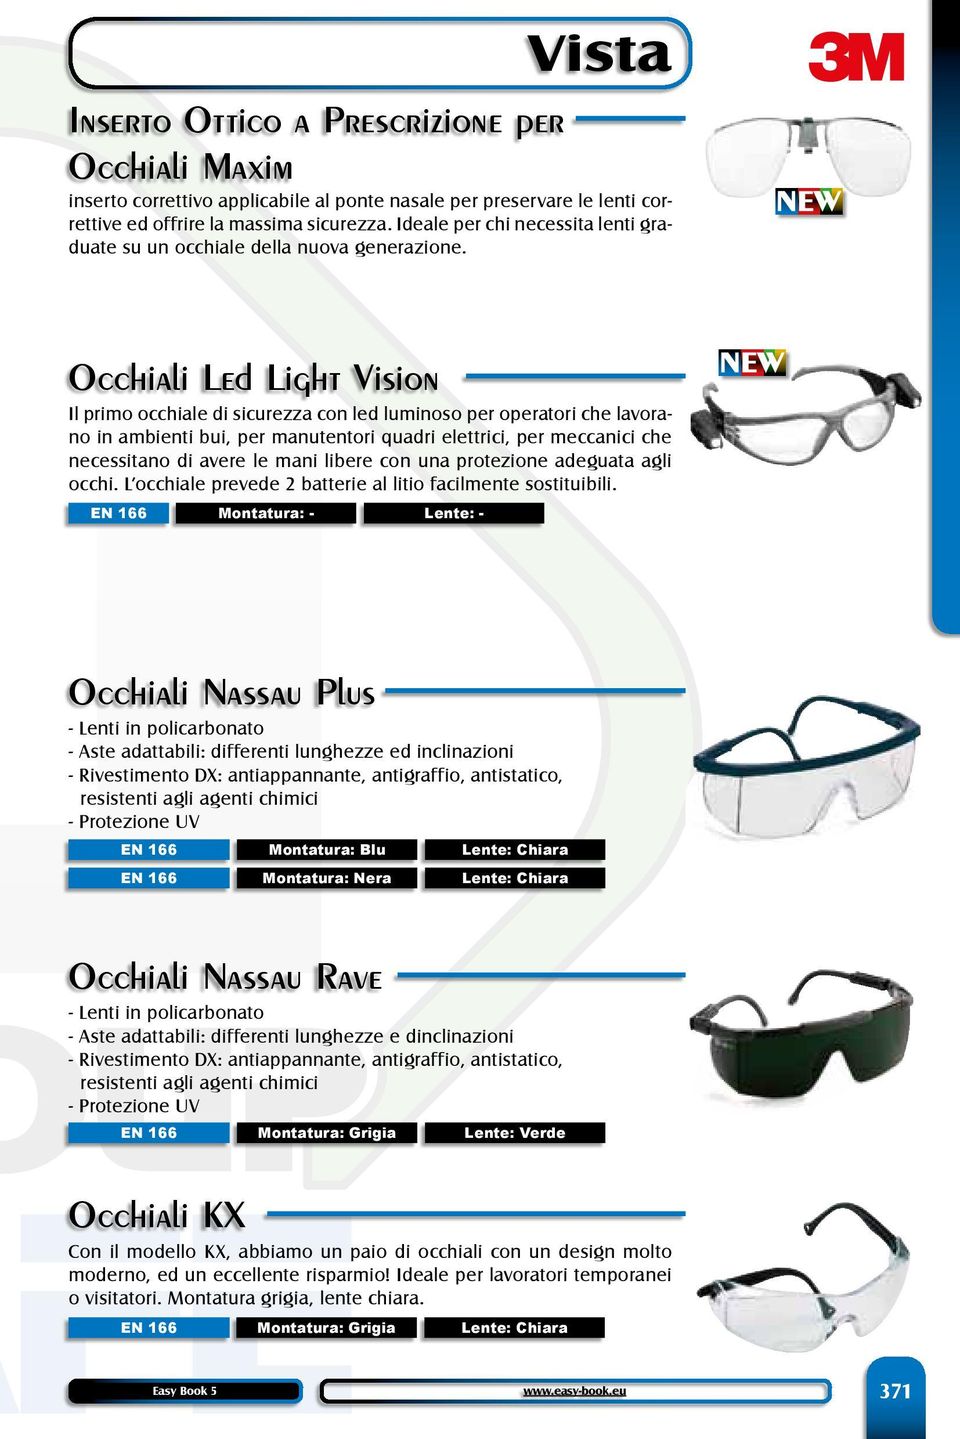 Occhiali Led Light Vision Il primo occhiale di sicurezza con led luminoso per operatori che lavorano in ambienti bui, per manutentori quadri elettrici, per meccanici che necessitano di avere le mani